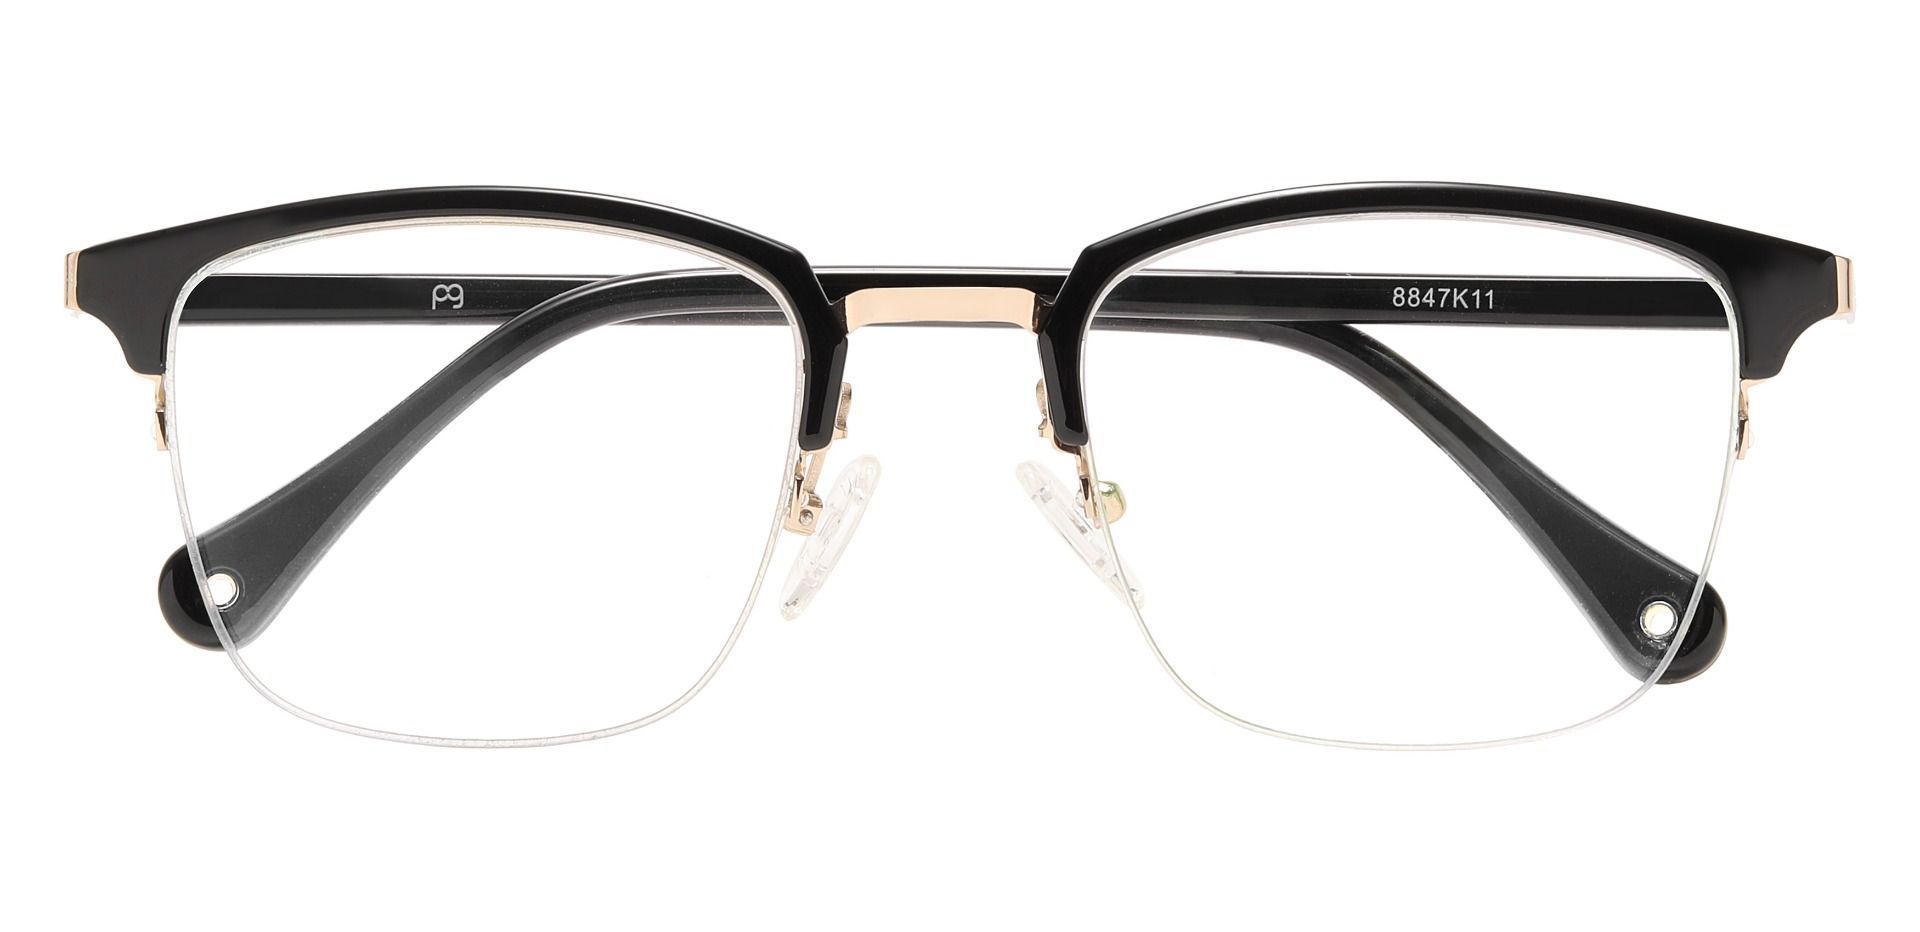 Atlantic Browline Non-Rx Glasses - Black